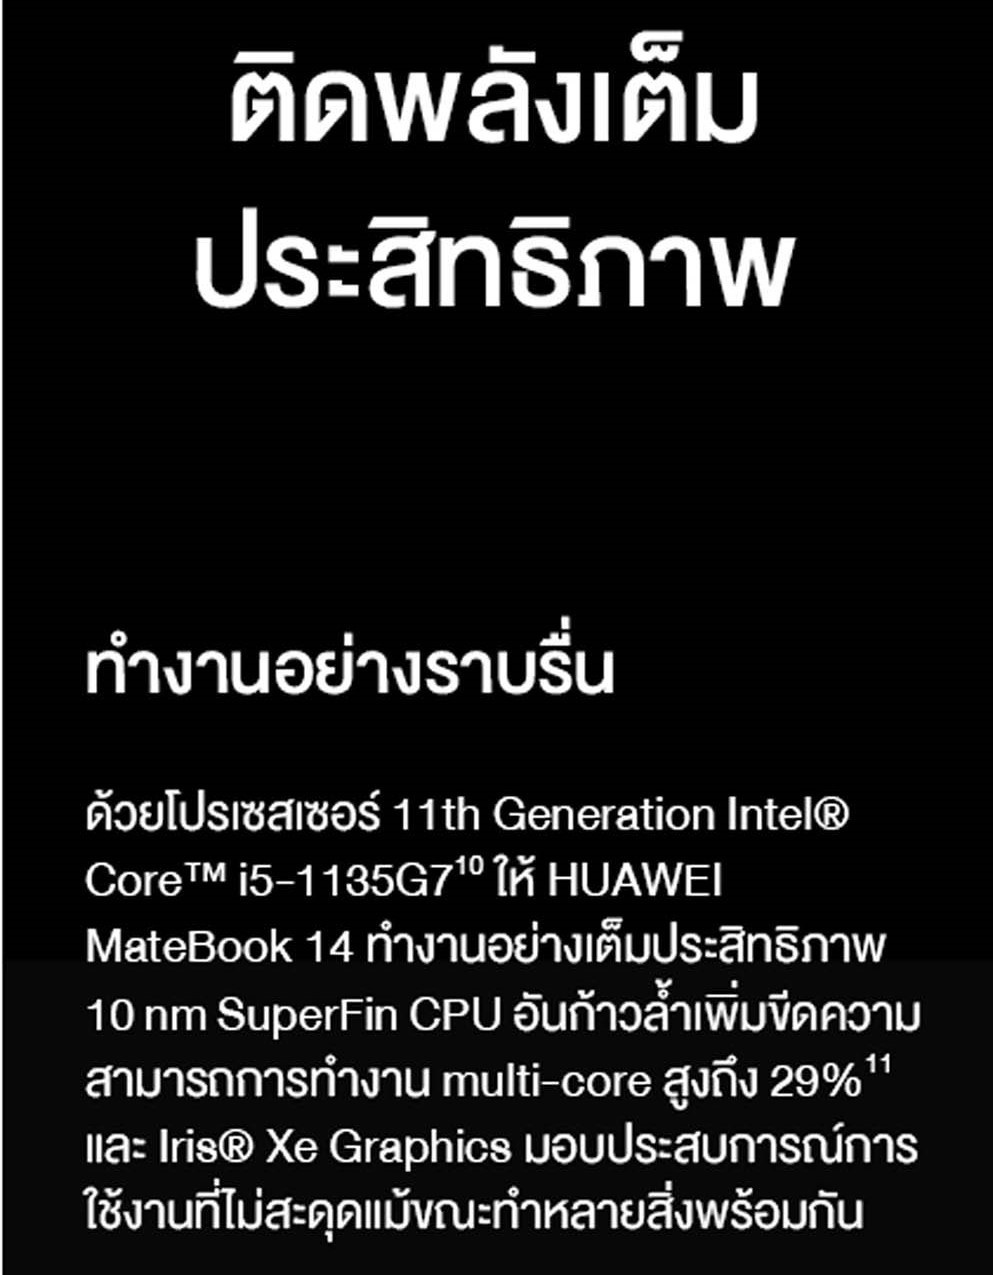 ภาพประกอบคำอธิบาย HUAWEI MateBook 14 11th Gen Intel Core i5-1135G7 Processor แล็ปท็อป Intel Iris Xe Graphics 16GB DDR4 3200 MHz 14 น